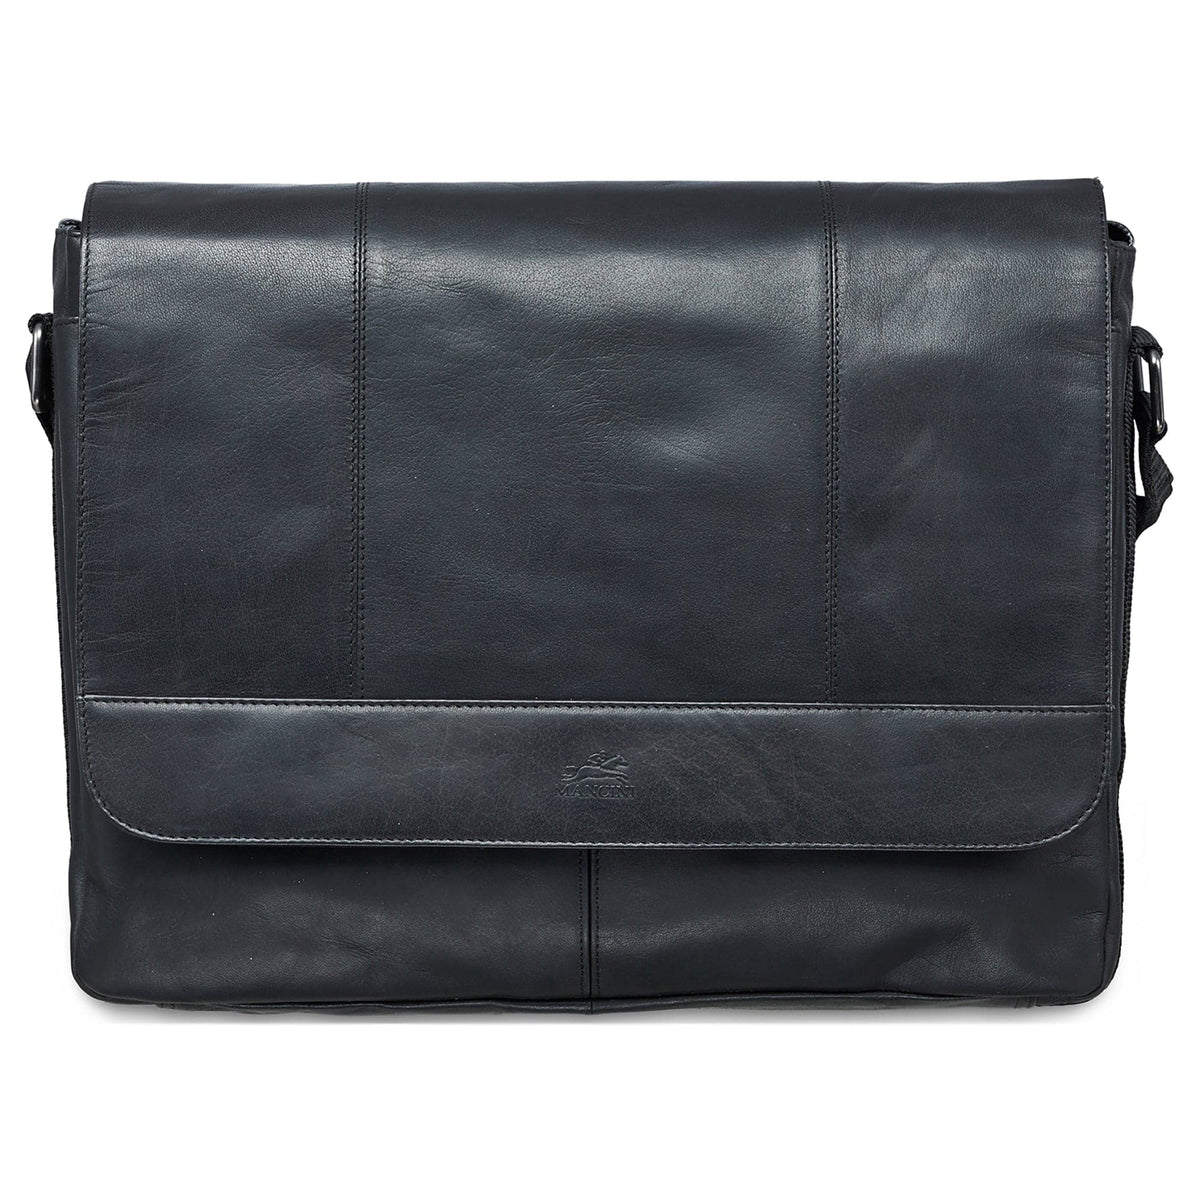 Mancini Buffalo 15" Messenger Bag for Laptop and Tablet